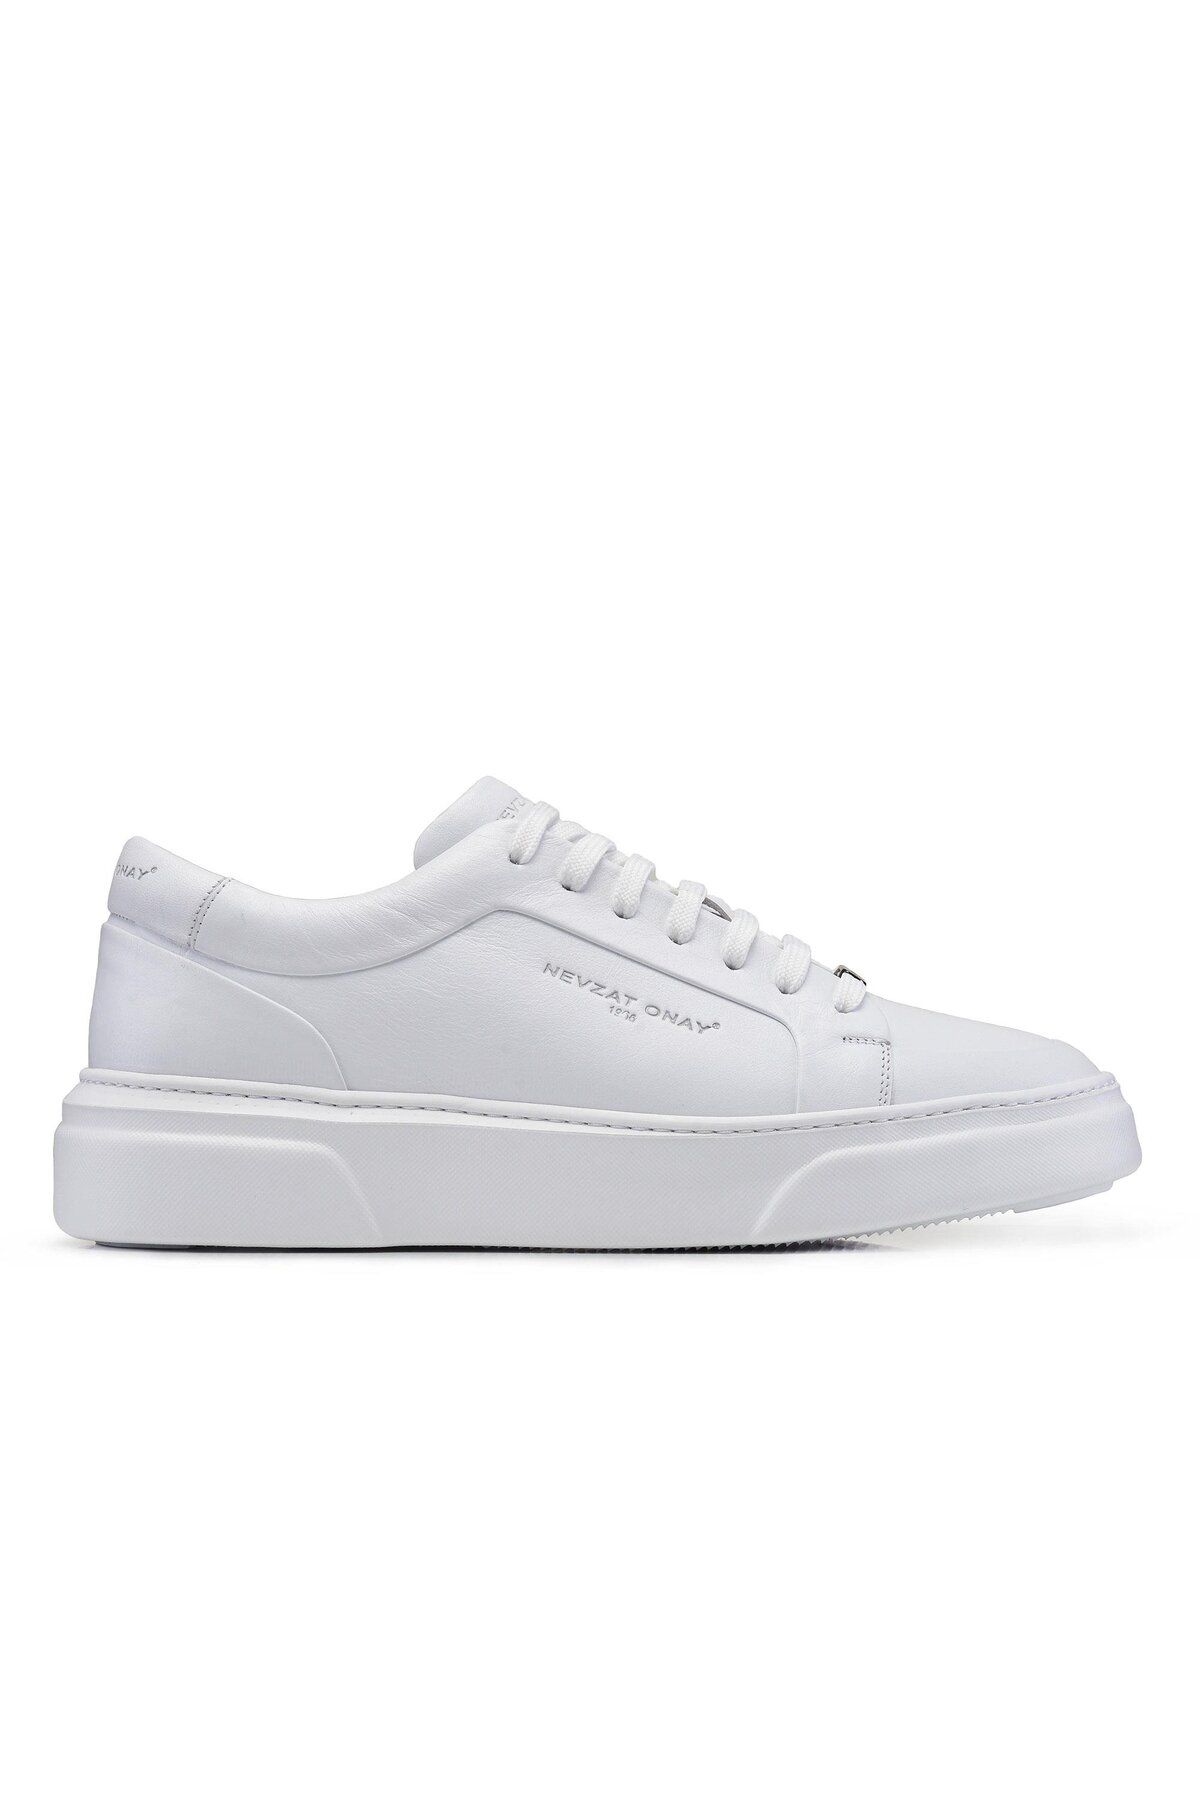 Nevzat Onay Beyaz Bağcıklı Sneaker -92182-